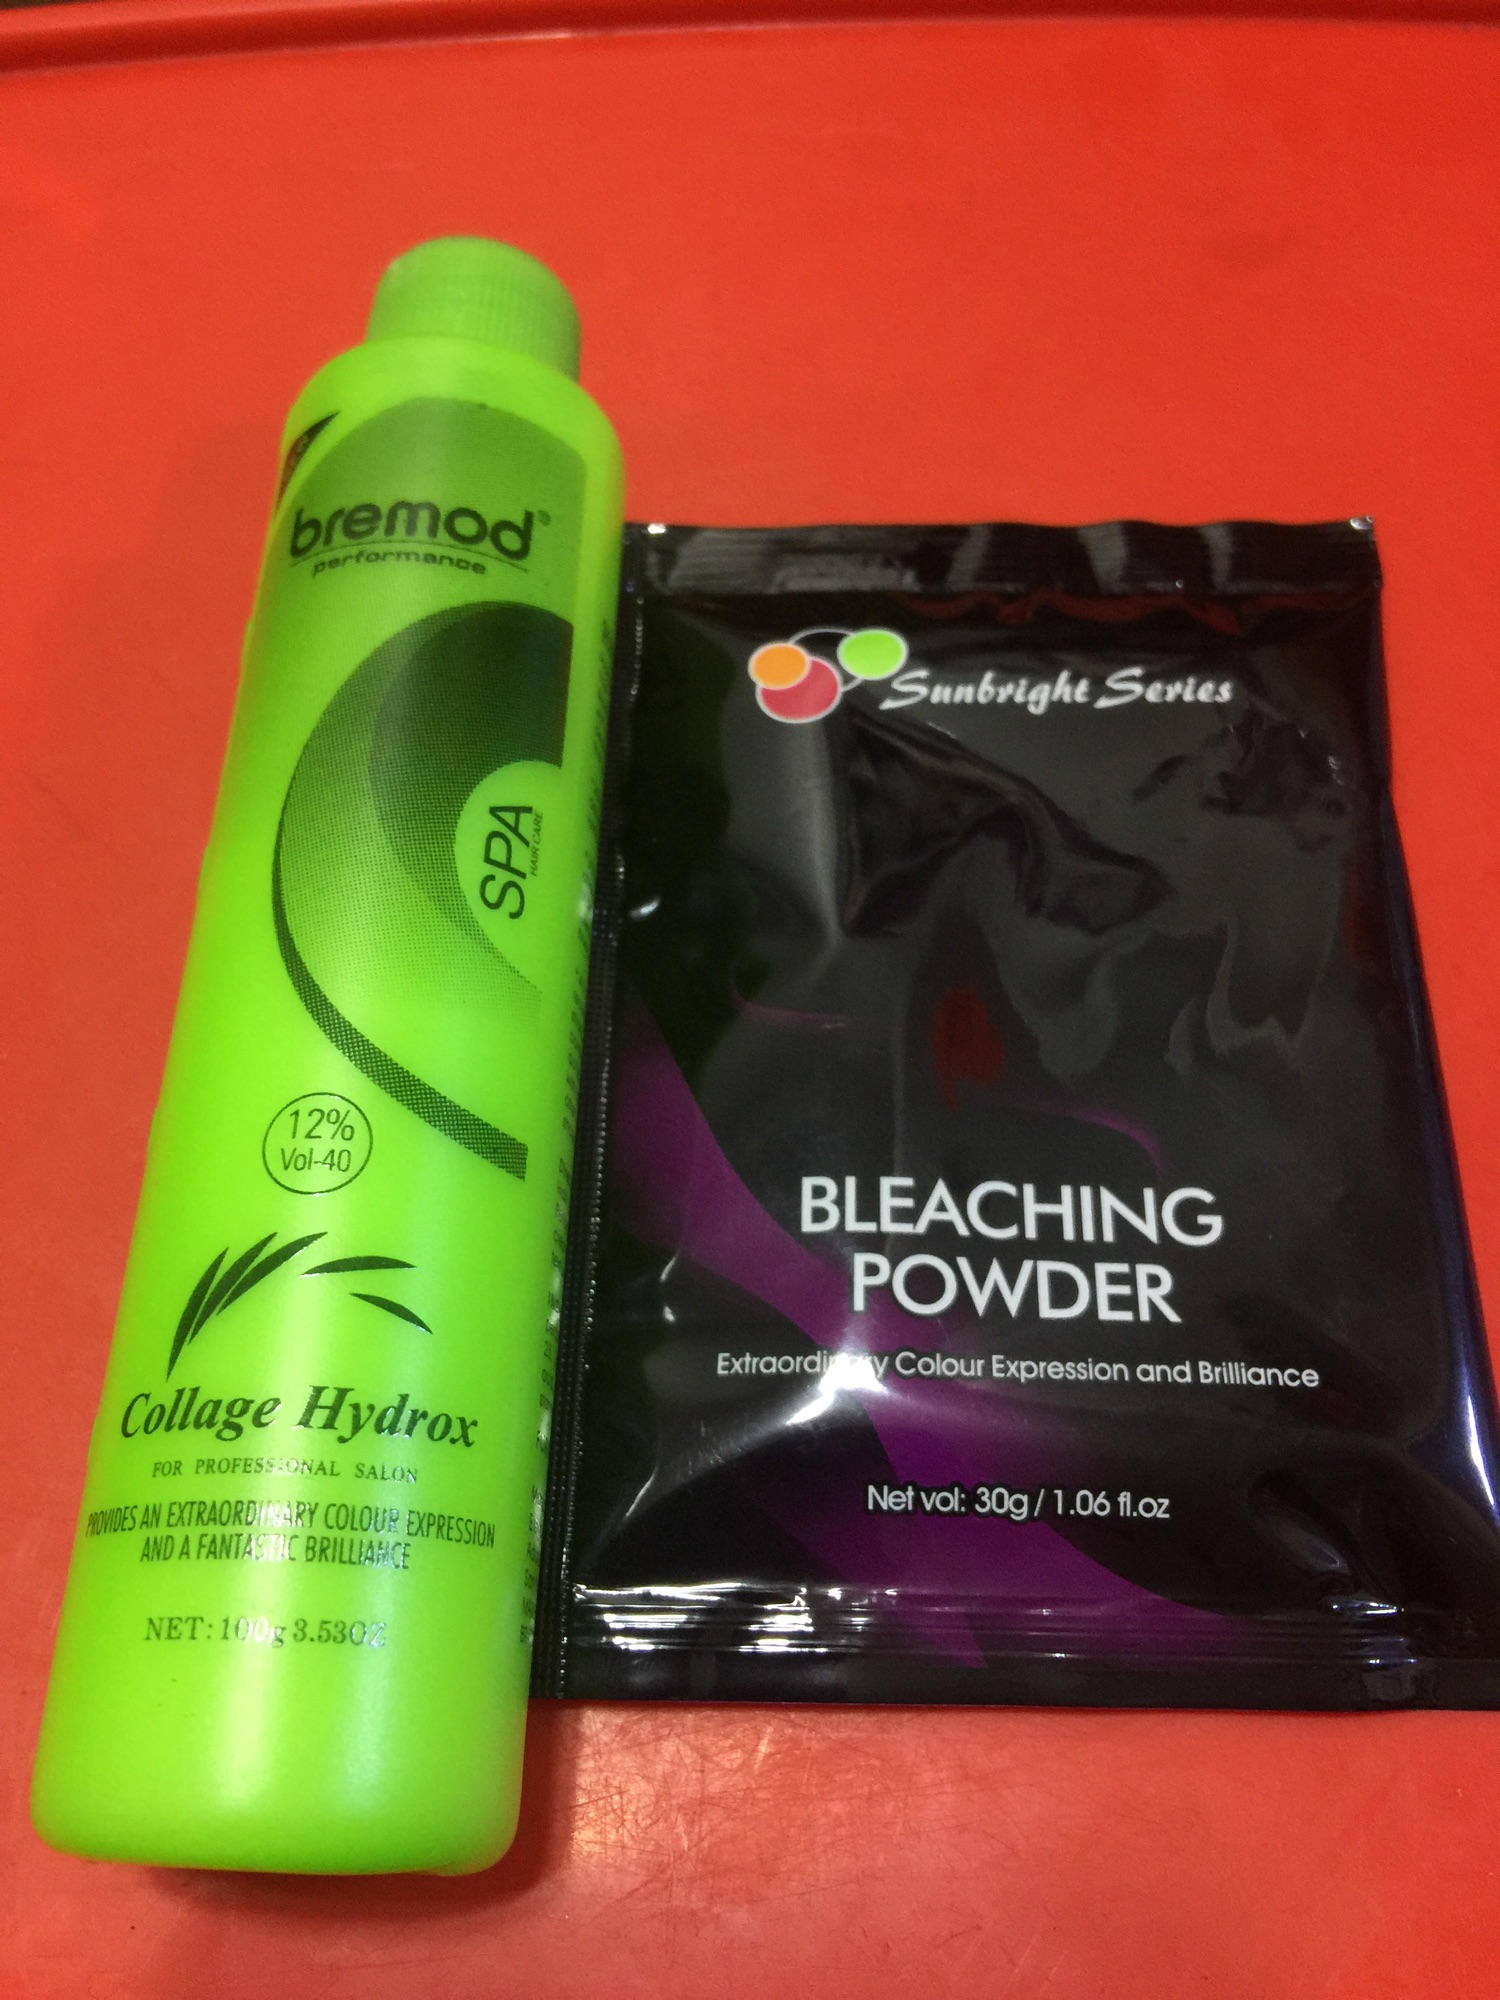 Sunbright bleaching powder 25g and bremod oxidizer 100 ml | Lazada PH